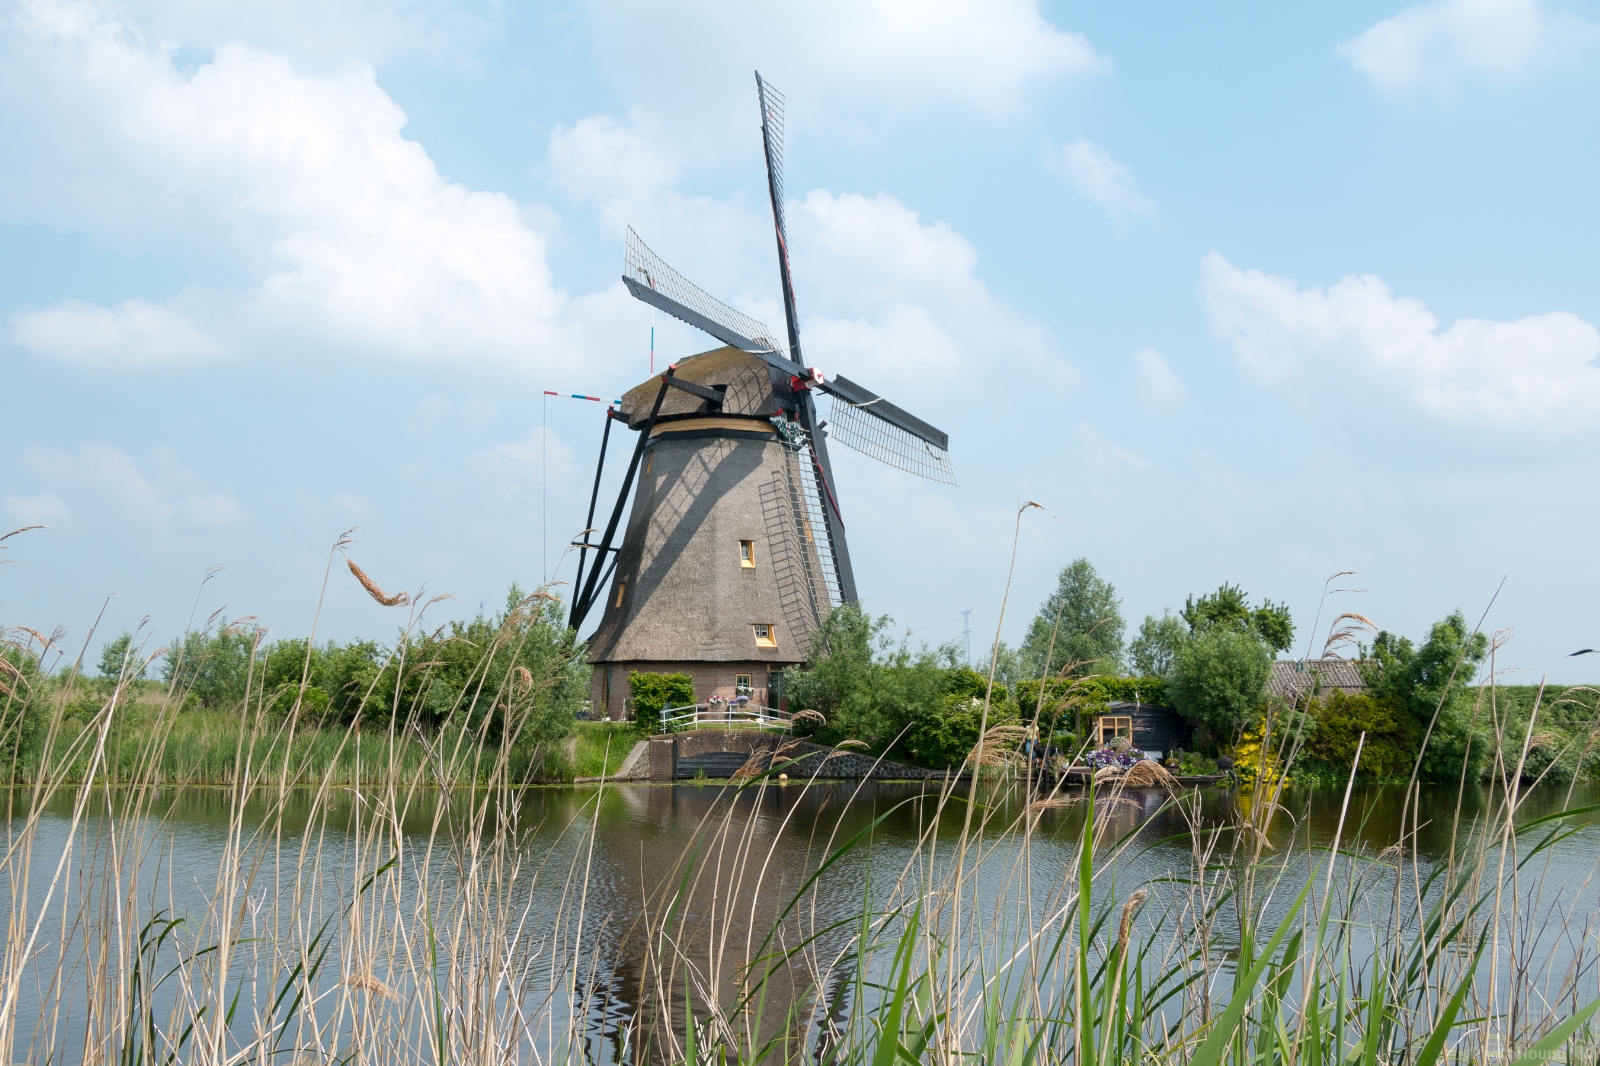 Image of Windmills of Kinderdijk by Ruud Bijvank